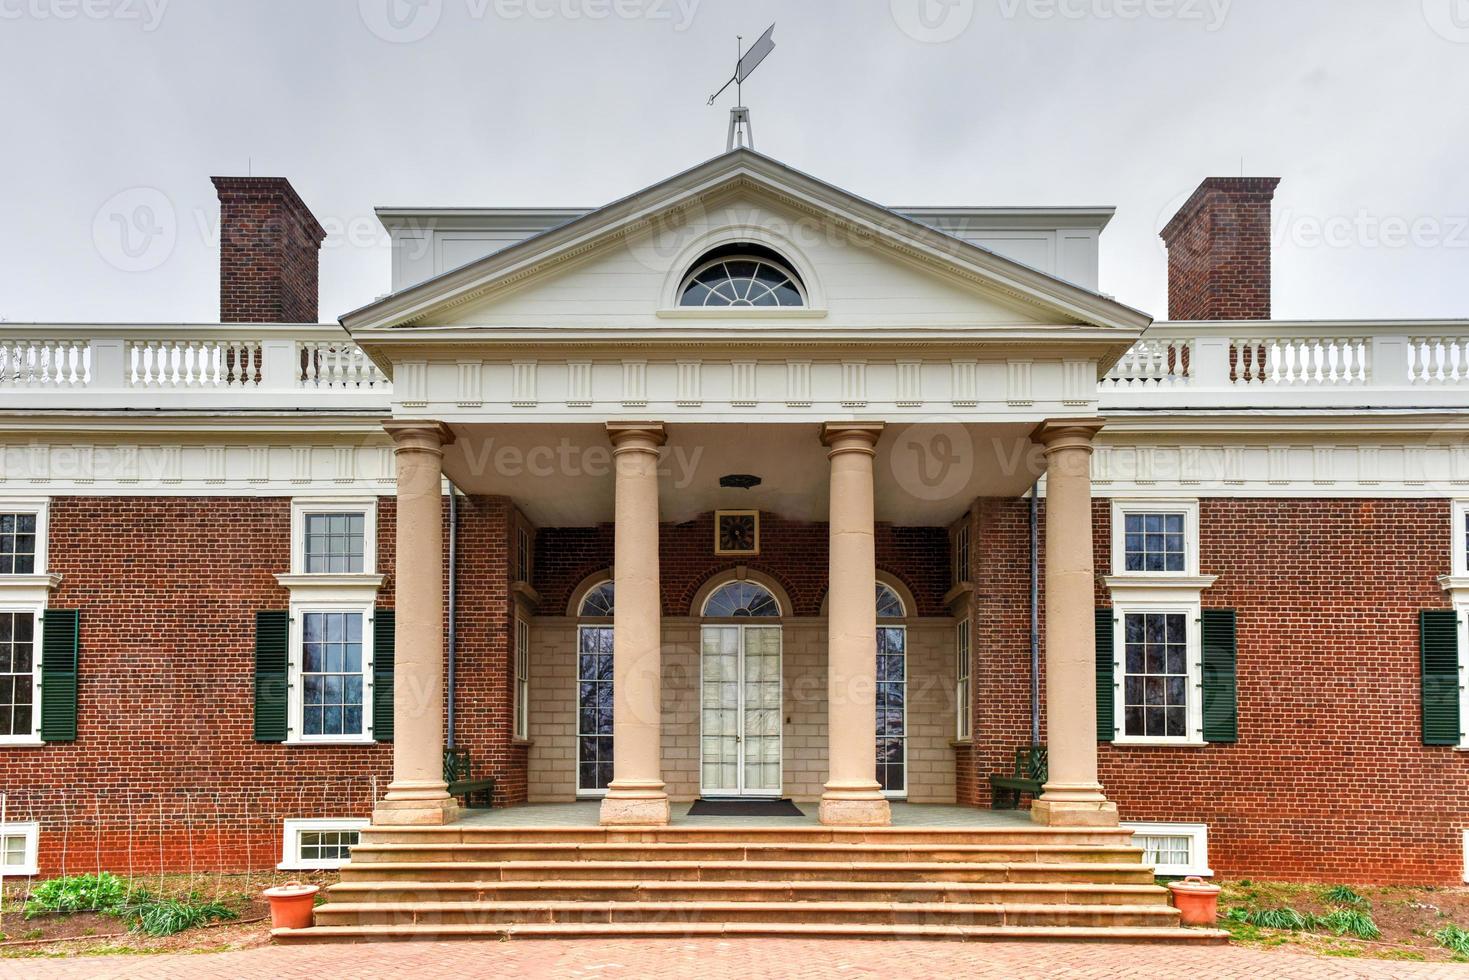 Thomas Jefferson's home, Monticello, in Charlottesville, Virginia. photo